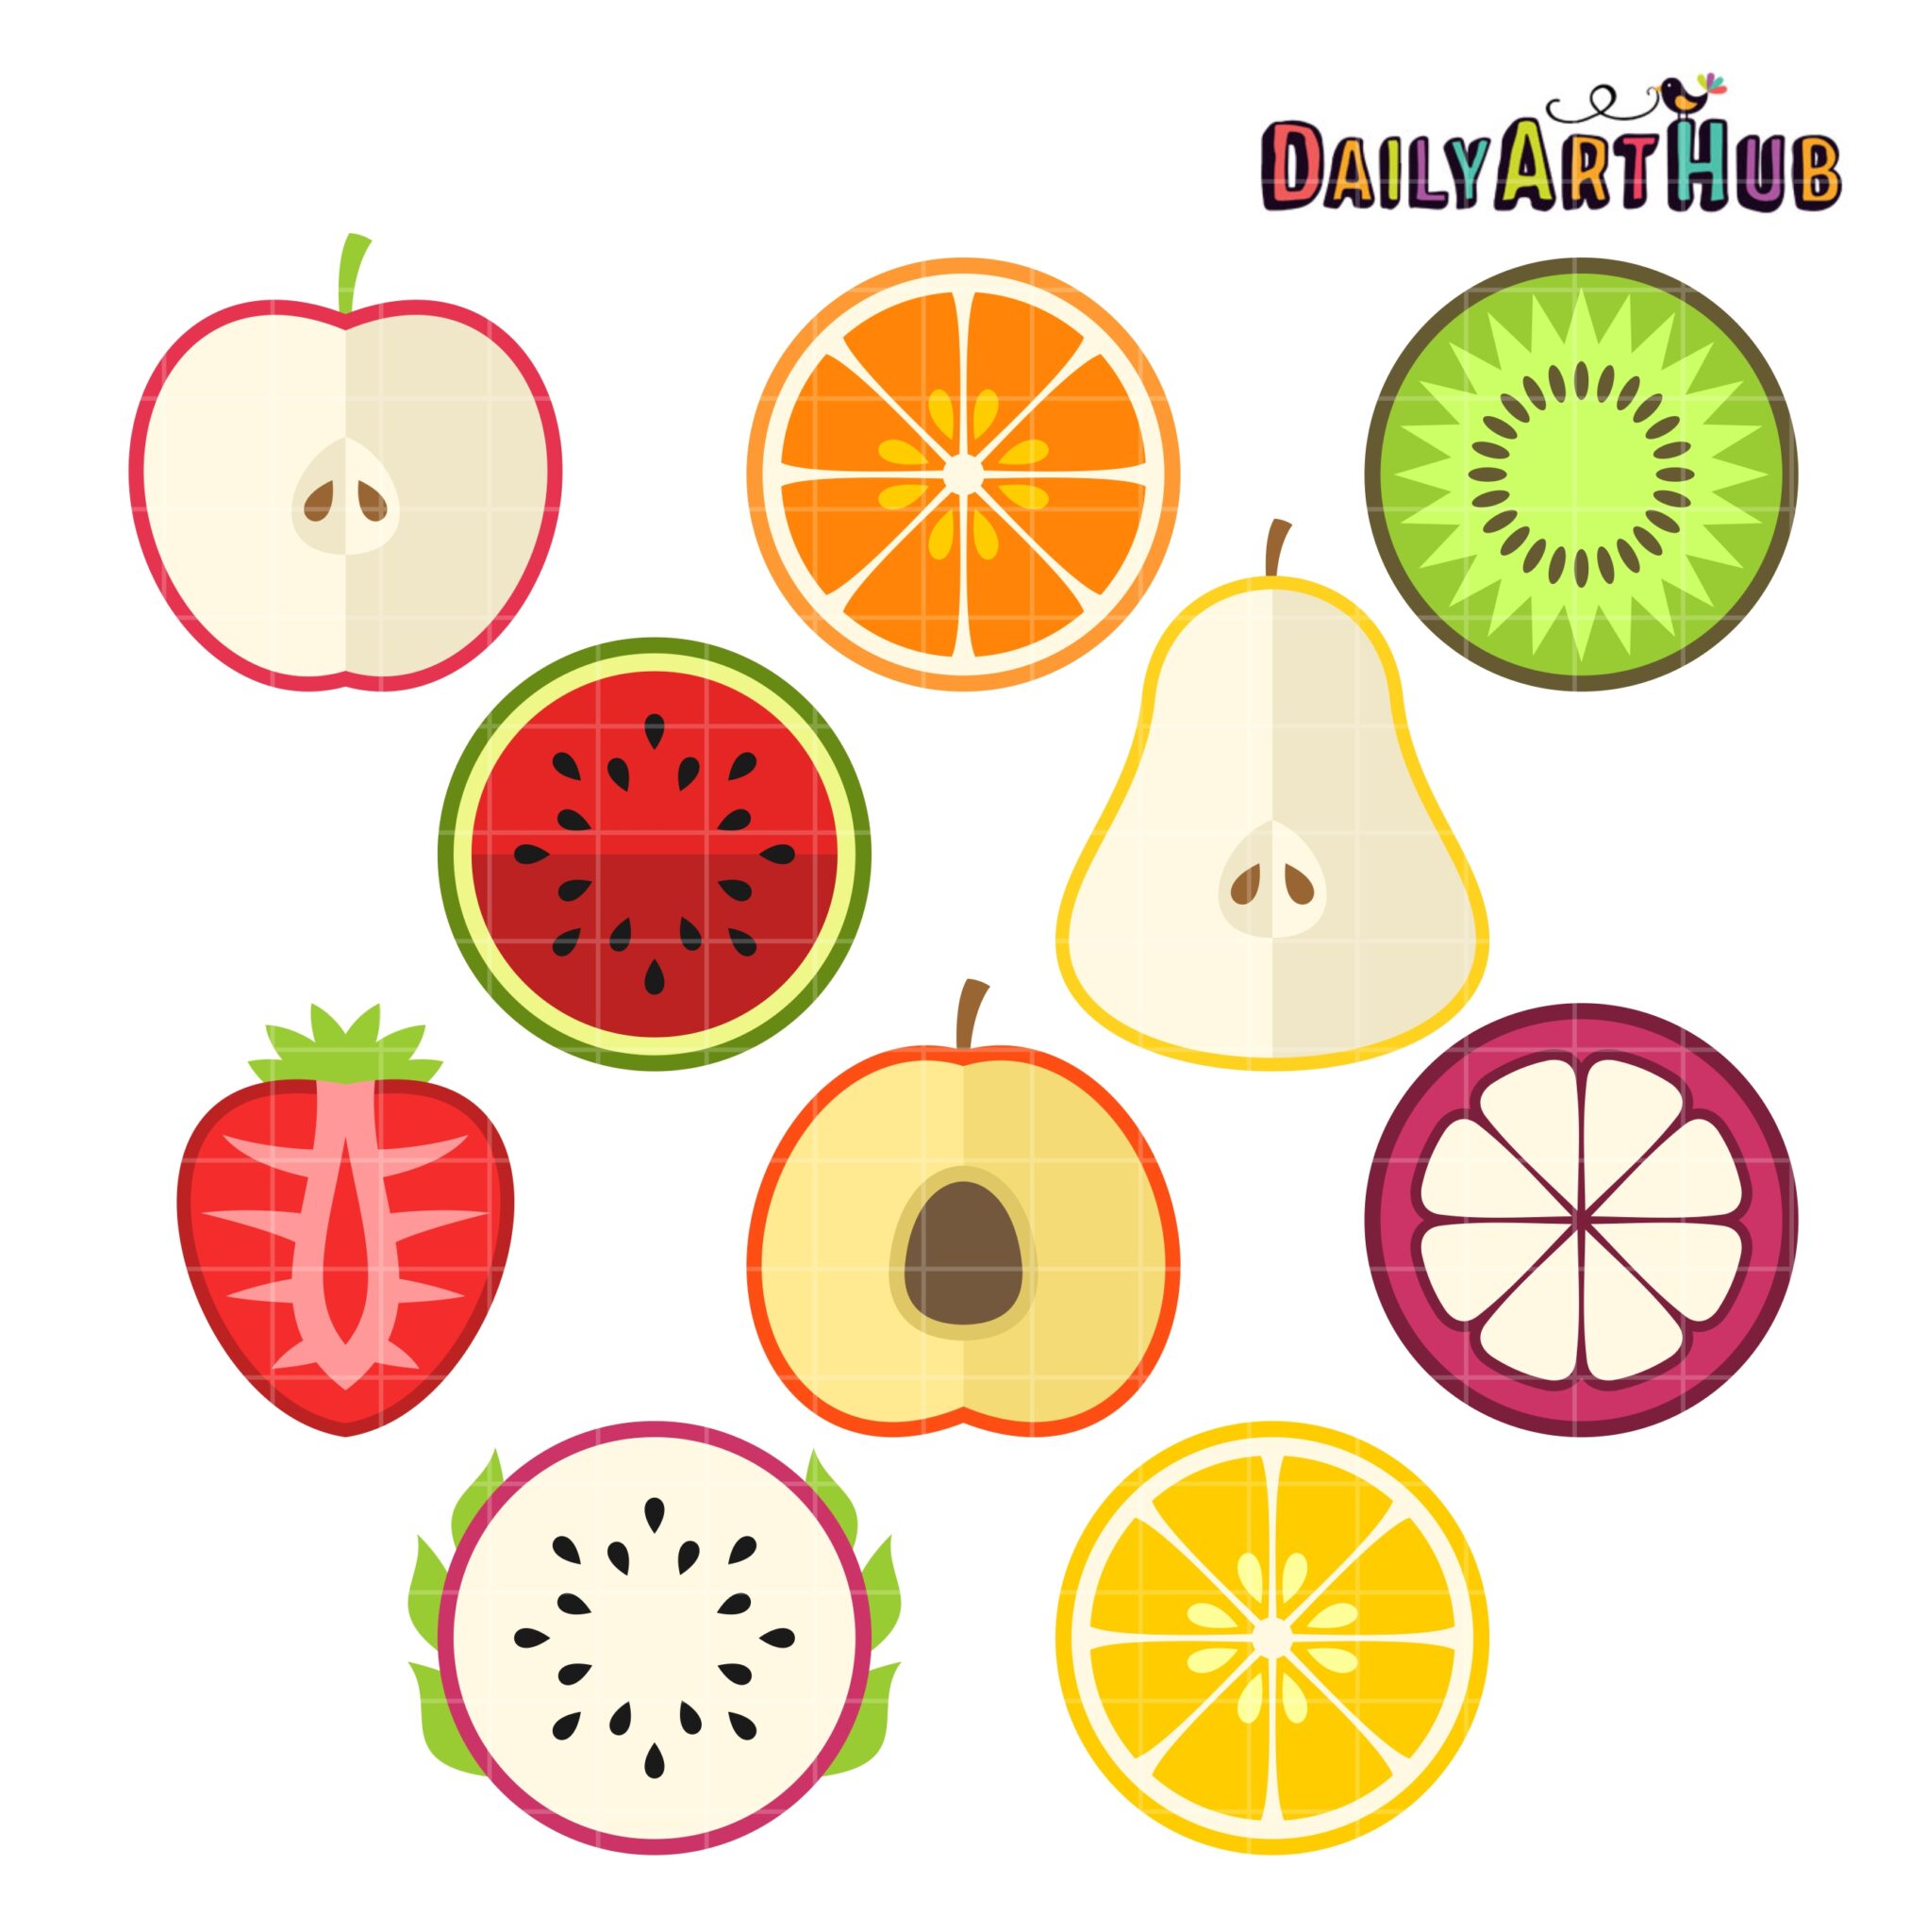 fruits clip art